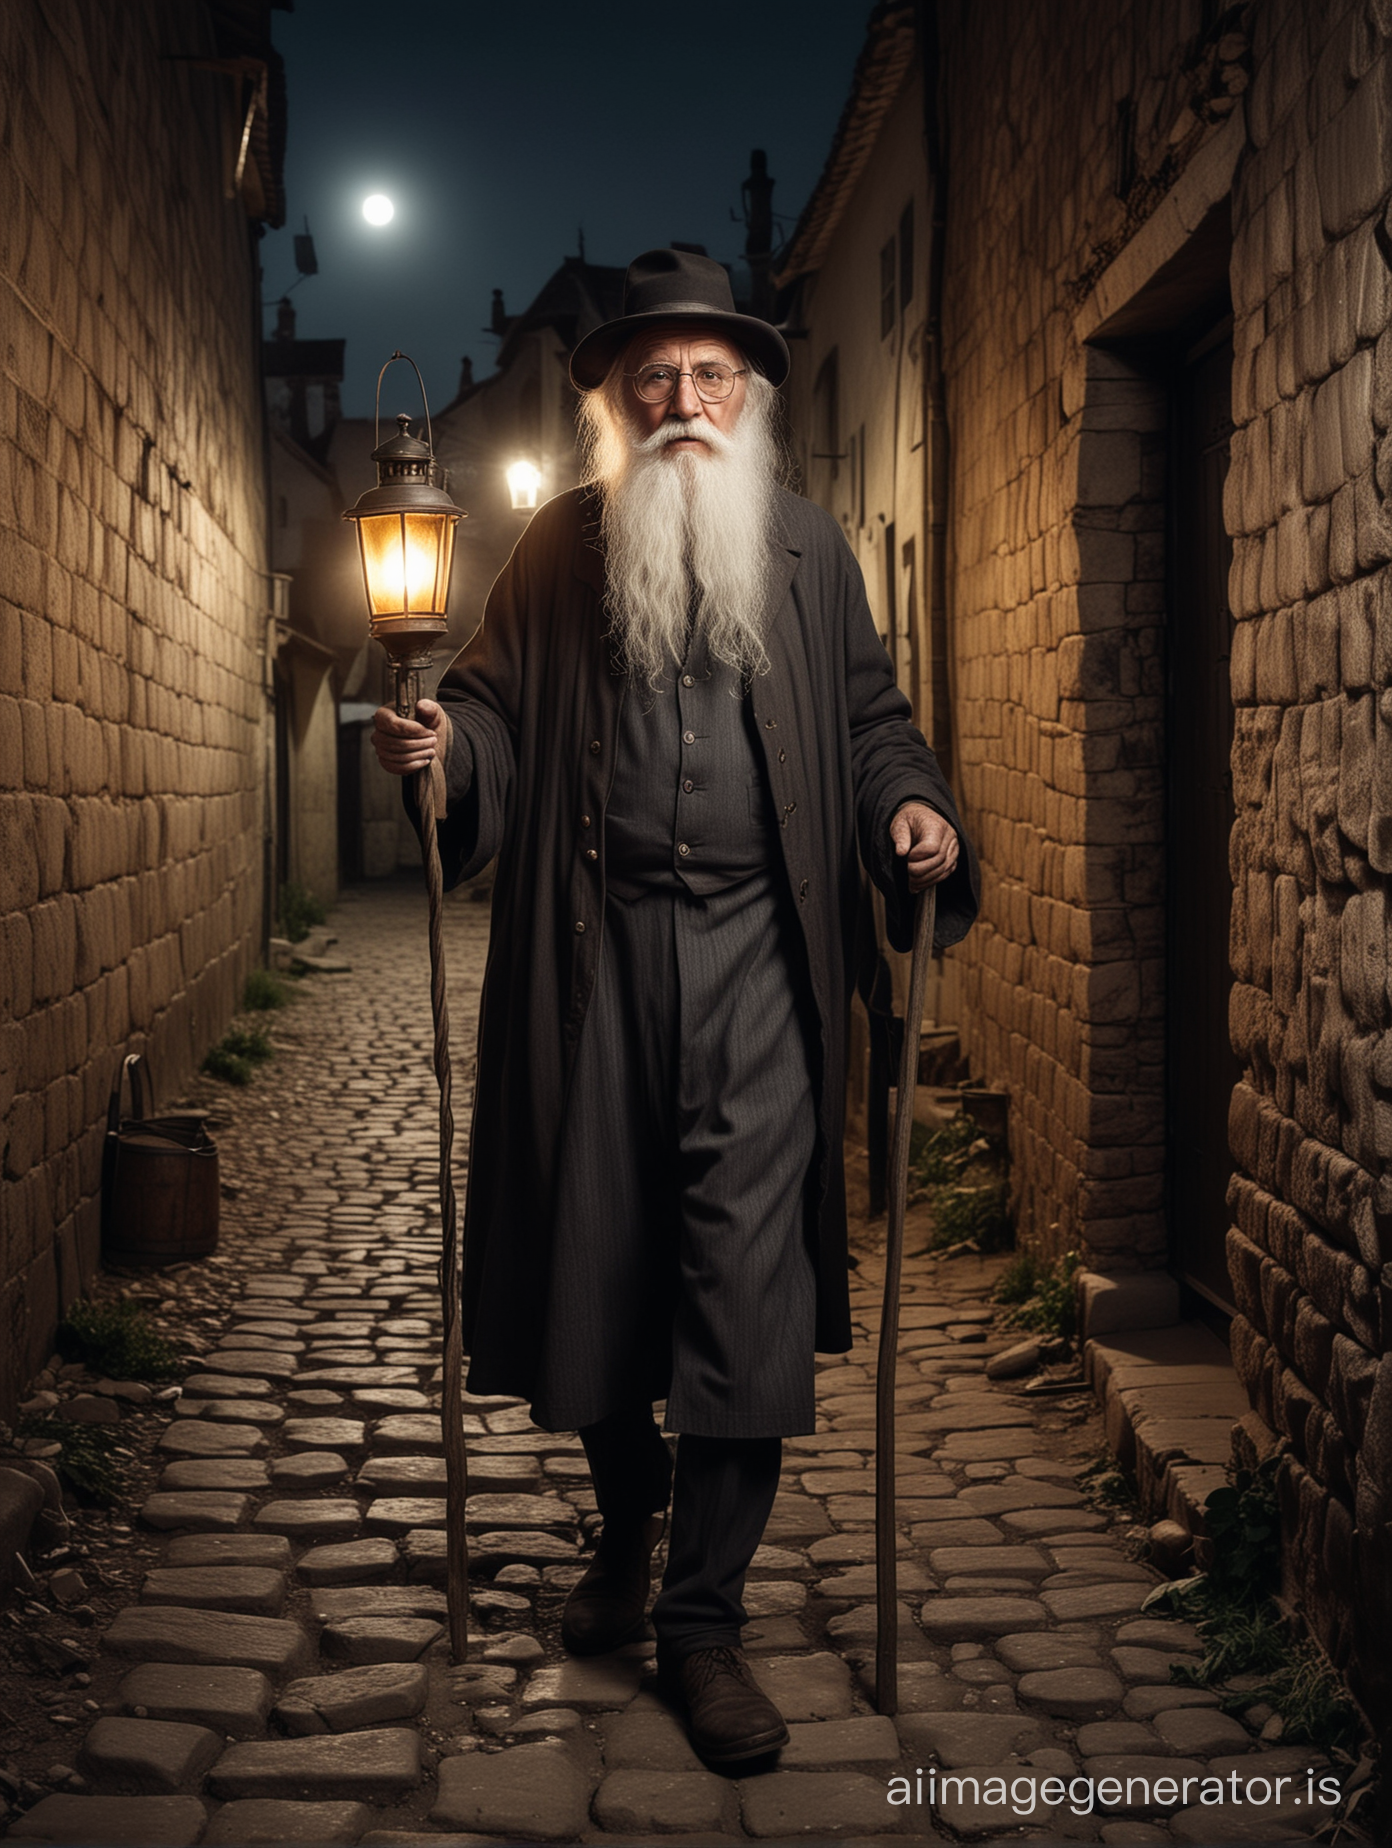 un vieil homme, grand, avec une très longue barbe blanche, portant un chapeau, des lunettes rondes et petites, l'air méchant, tenant une vieille lanternee allumée en 1850, il marche dans une ruelle sombre d'un village médiéval, la photo est en couleurs